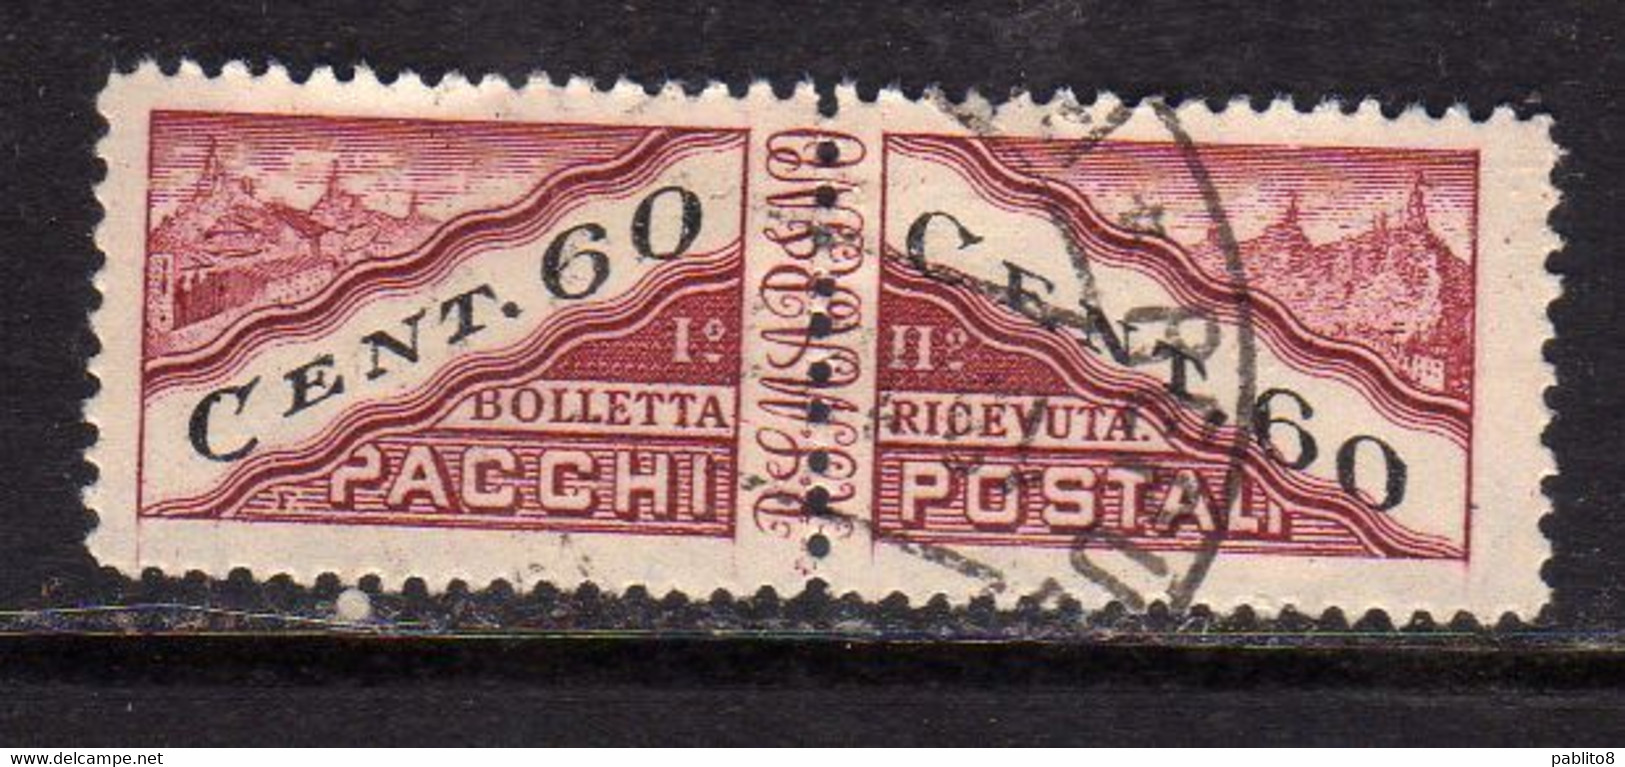 REPUBBLICA DI SAN MARINO 1945 PACCHI POSTALI PARCEL POST CENT. 60c USATO USED OBLITERE' - Paketmarken